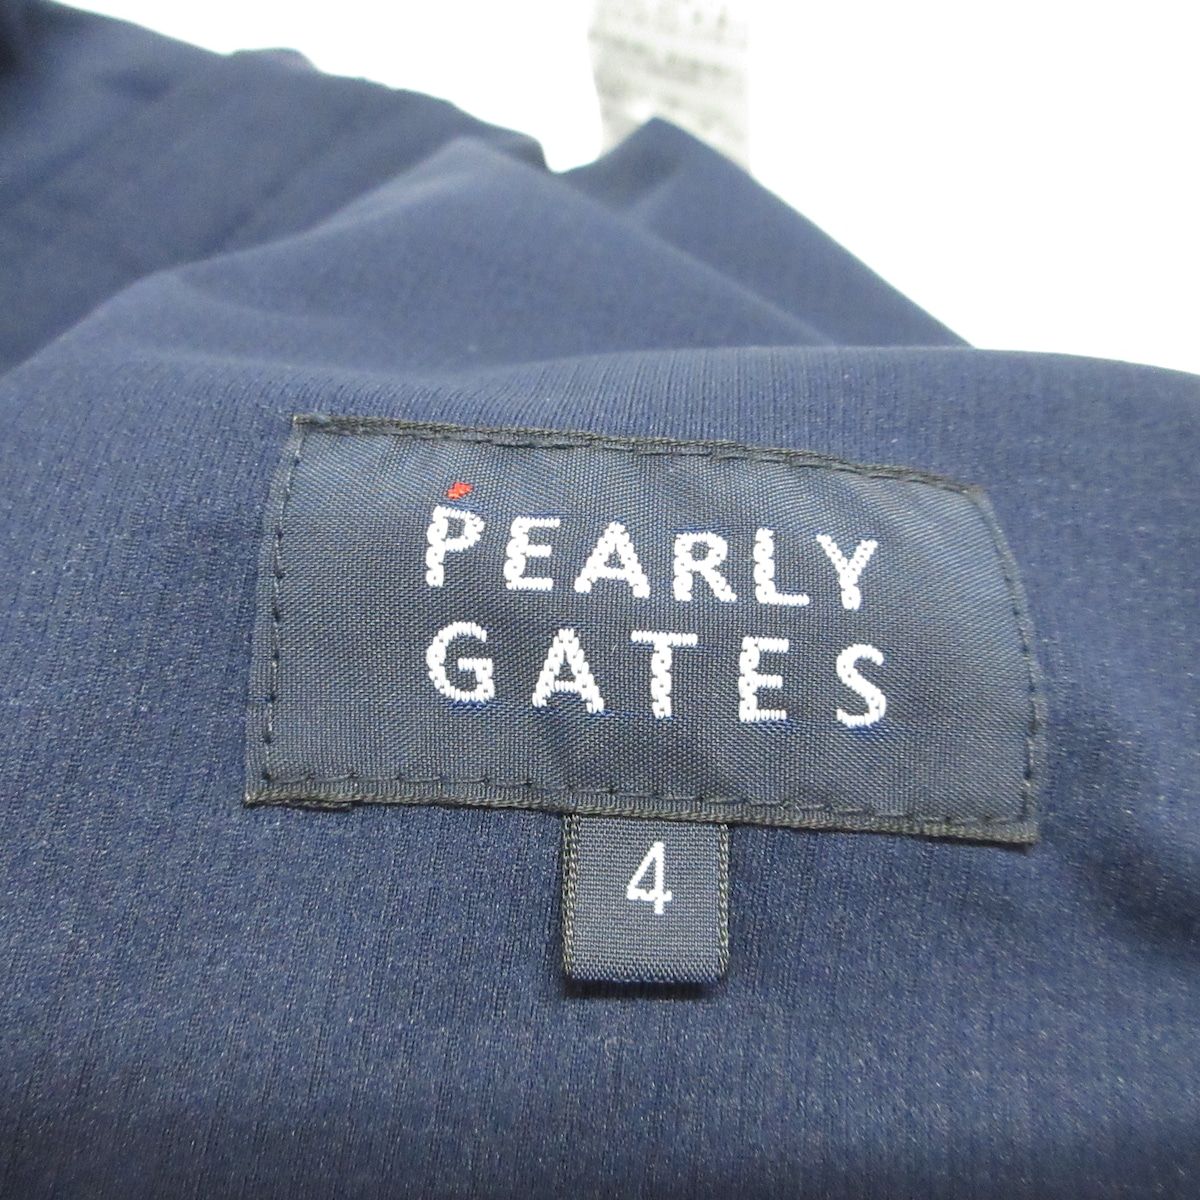 PEARLY GATES(パーリーゲイツ) パンツ サイズ4 XL メンズ美品 - ネイビー×白 フルレングス/ドット